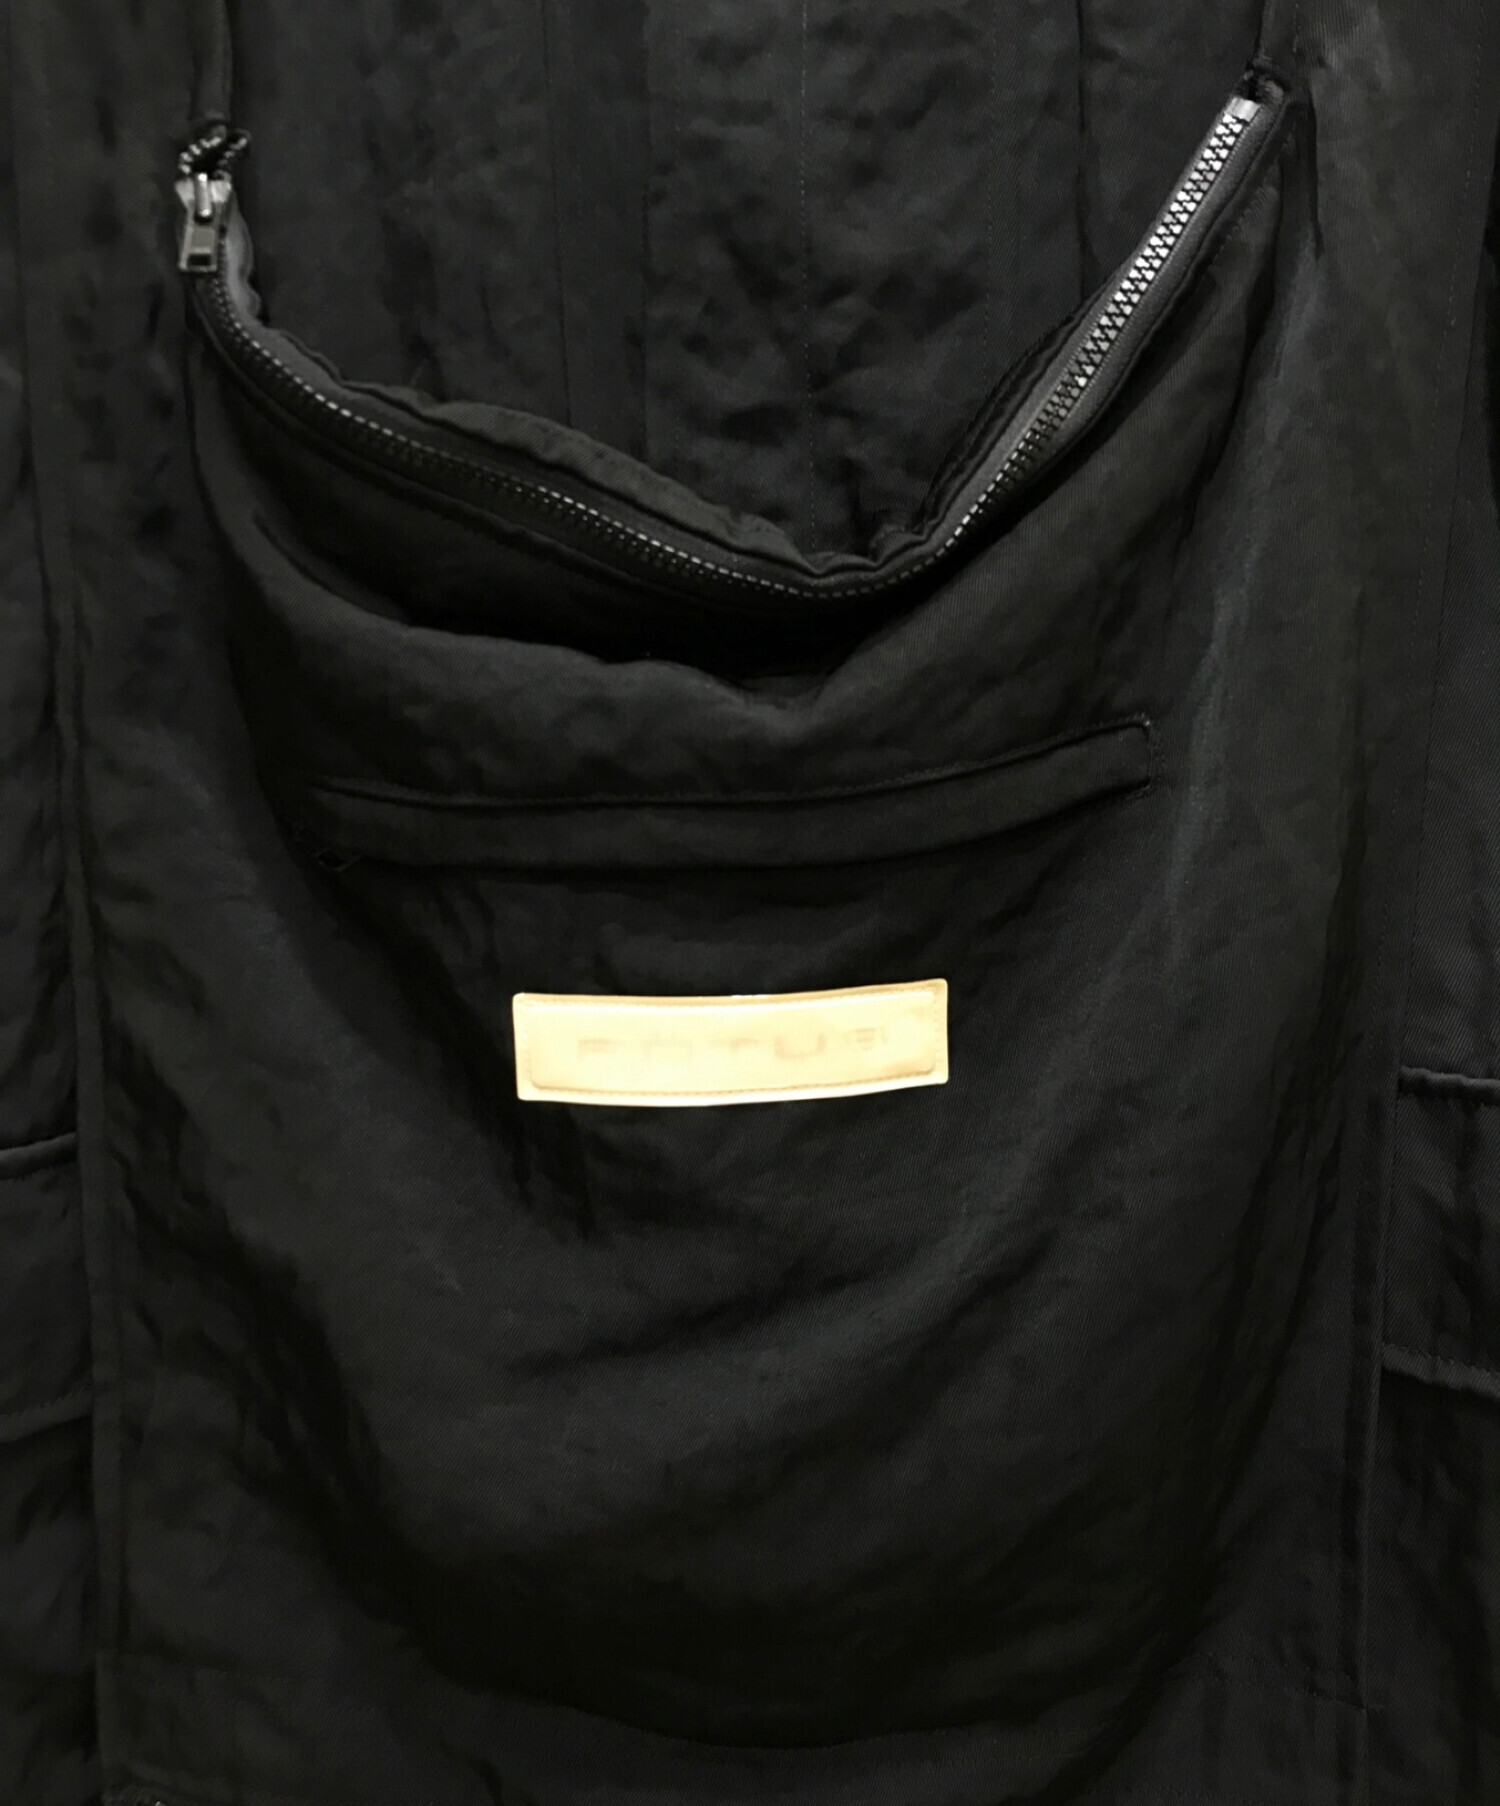 FOTUS (フェトウス) フロントバッグナイロンギミックコート ブラック サイズ:S